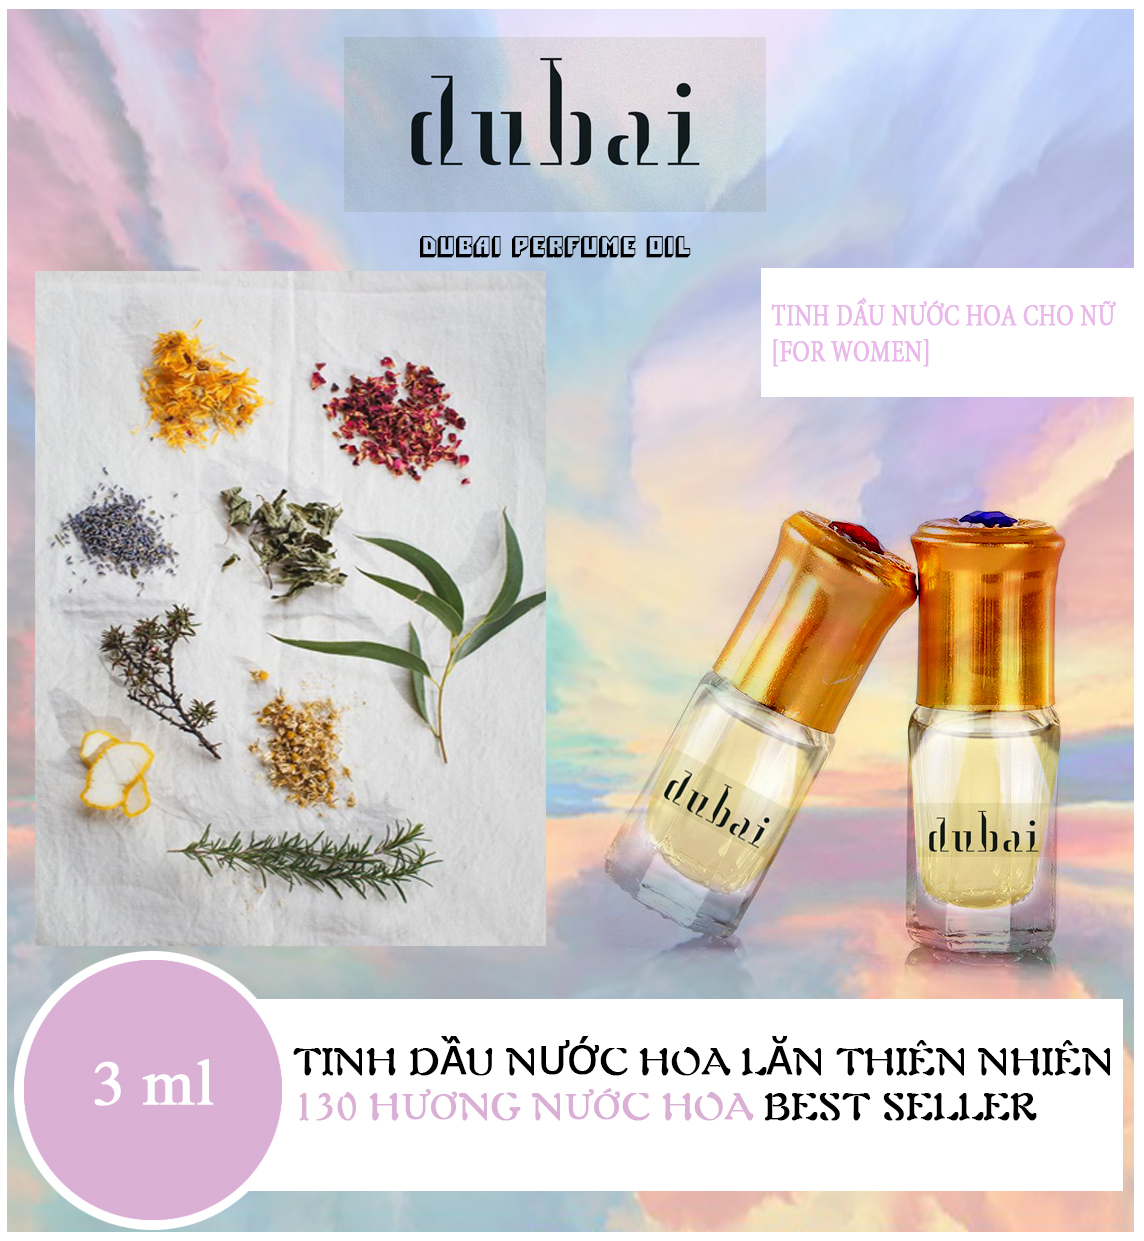 [Lưu hương lâu 12 tiếng] Tinh dầu nước hoa thiên nhiên Dubai dạng lăn 3ml mẫu thử hàng cao cấp 130 mùi hương nước hoa nam nữ